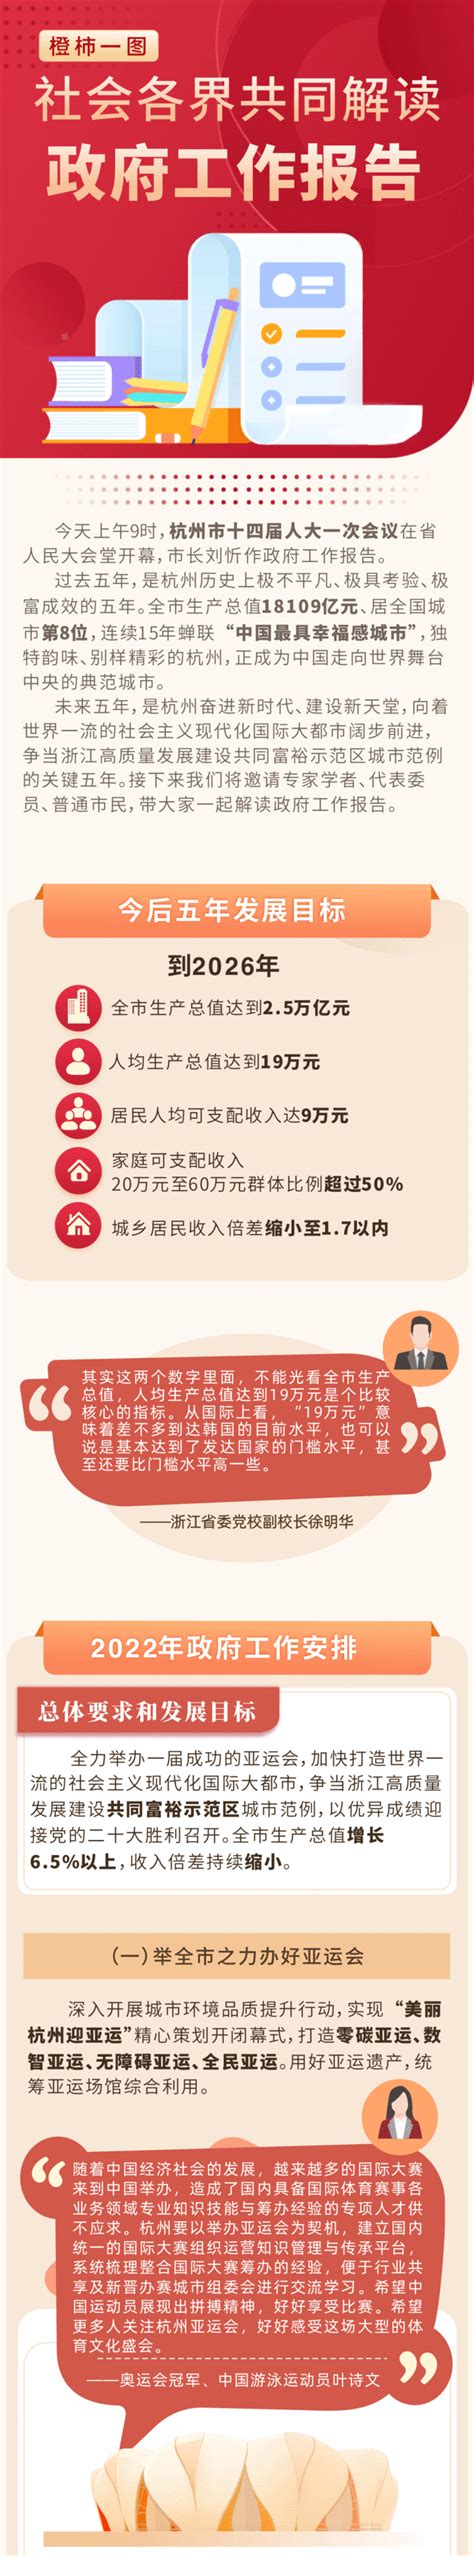 关于《杭州市上城区人民政府质量奖评审管理办法》的政策解读